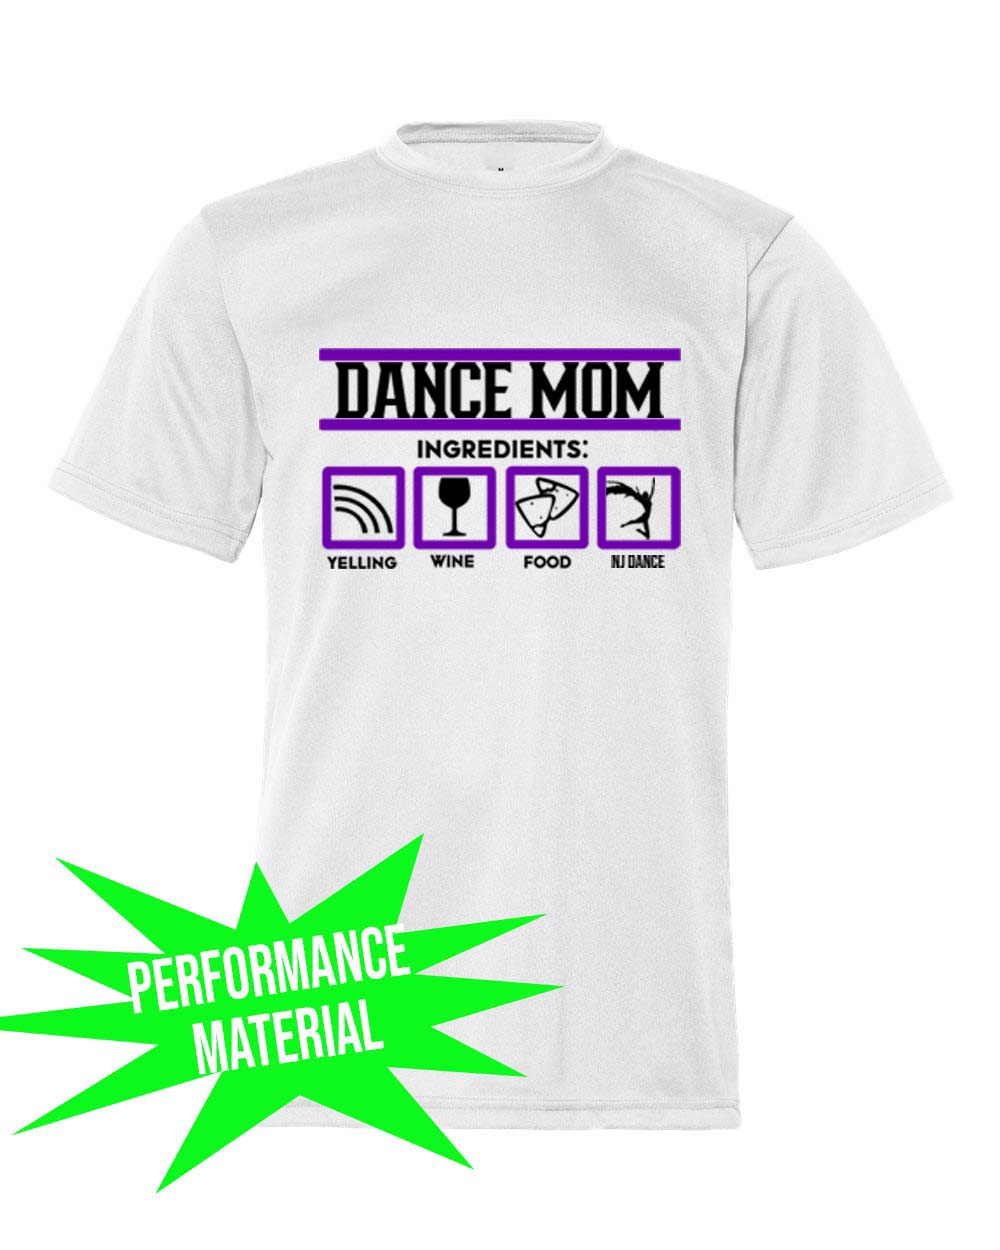 dance shirt design ideas